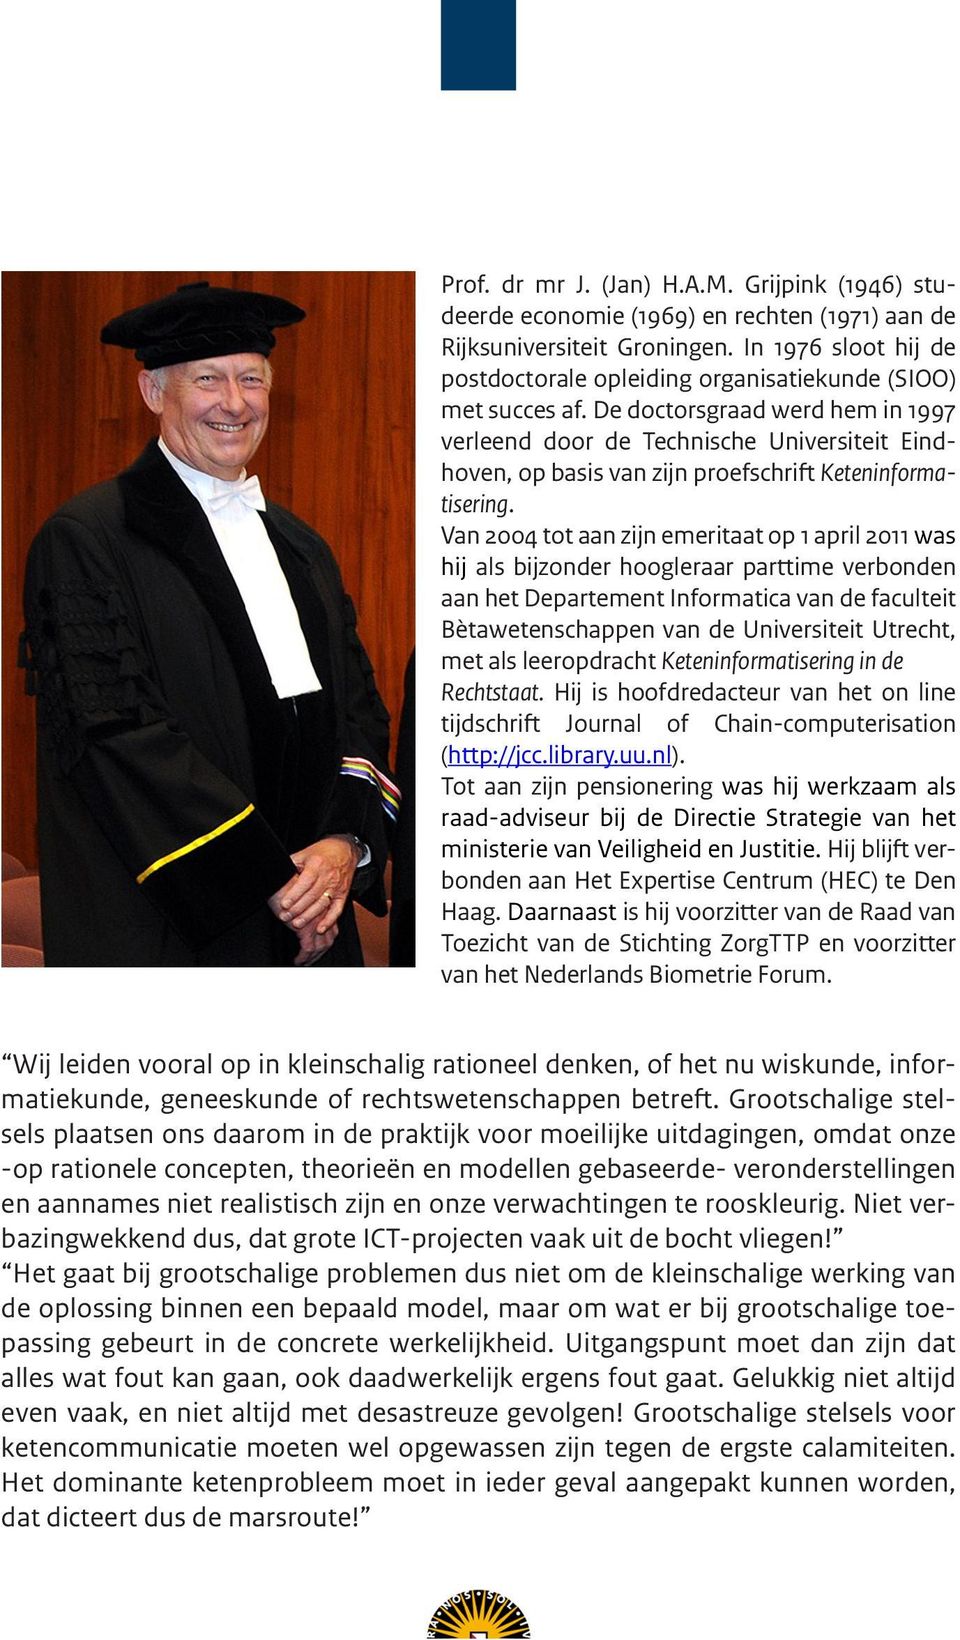 De doctorsgraad werd hem in 1997 verleend door de Technische Universiteit Eindhoven, op basis van zijn proefschrift Keteninformatisering.